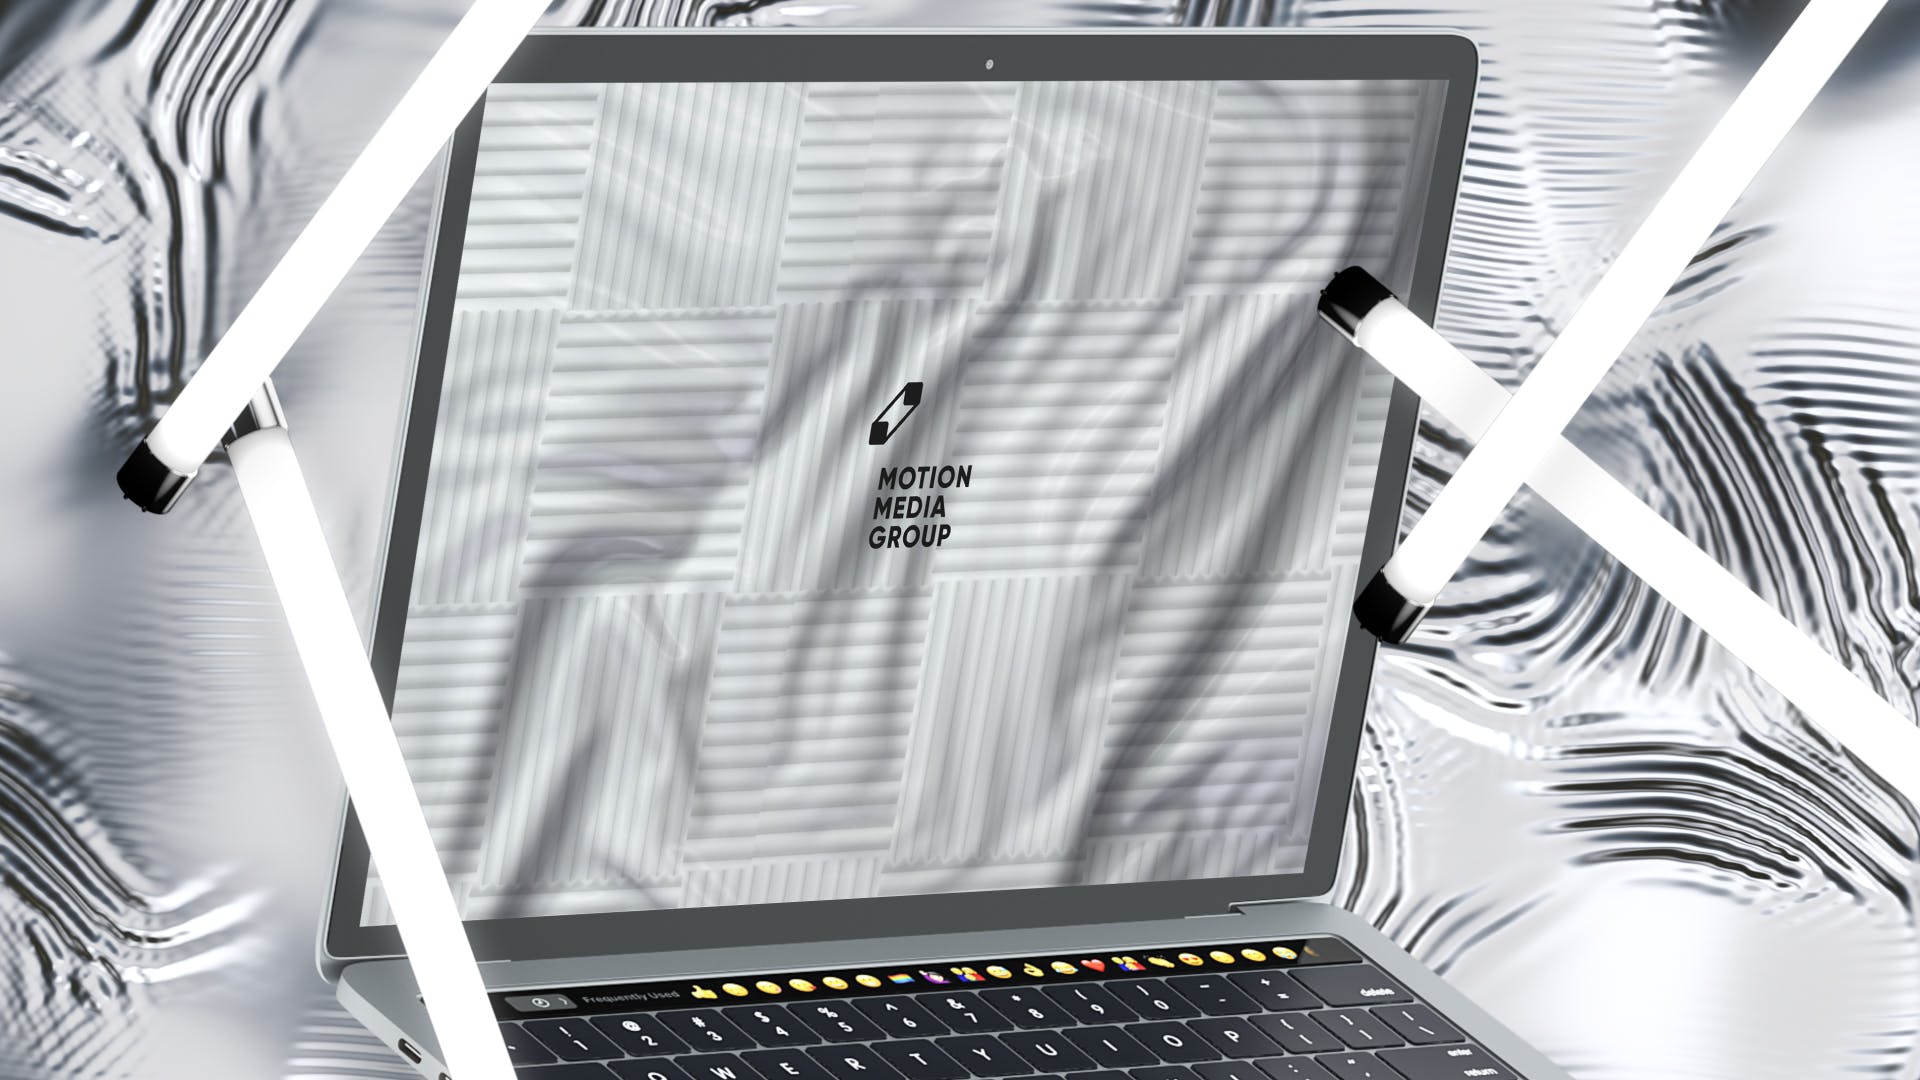 优雅时尚风格3D立体风格笔记本电脑屏幕预览蚂蚁素材精选样机 10 Light Laptop Mockups插图(6)